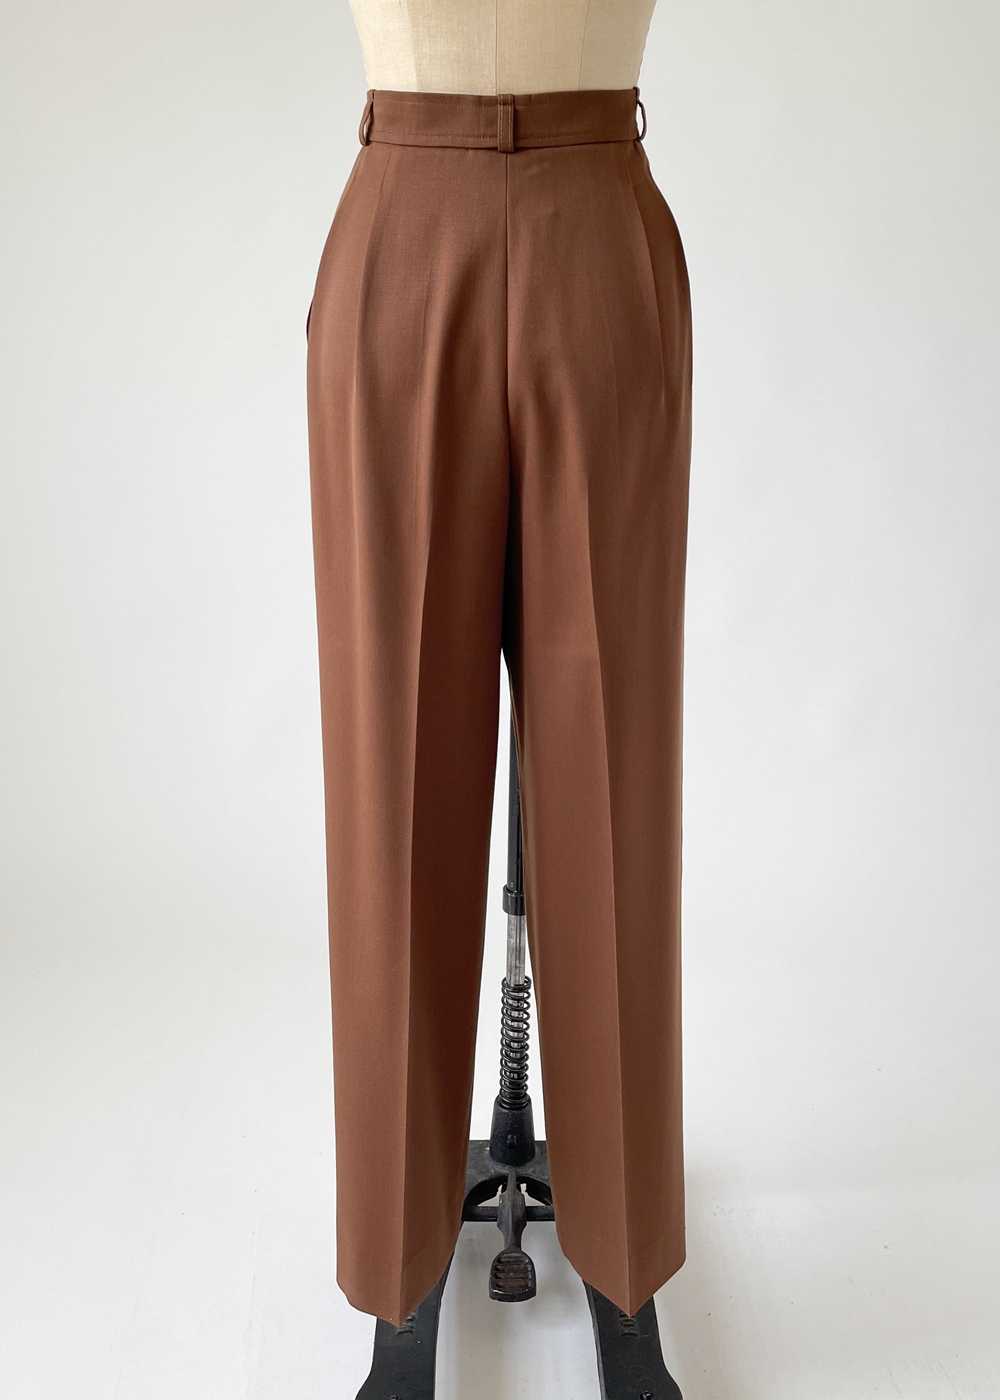 Vintage 1980s Yves Saint Laurent Pant Suit - image 8